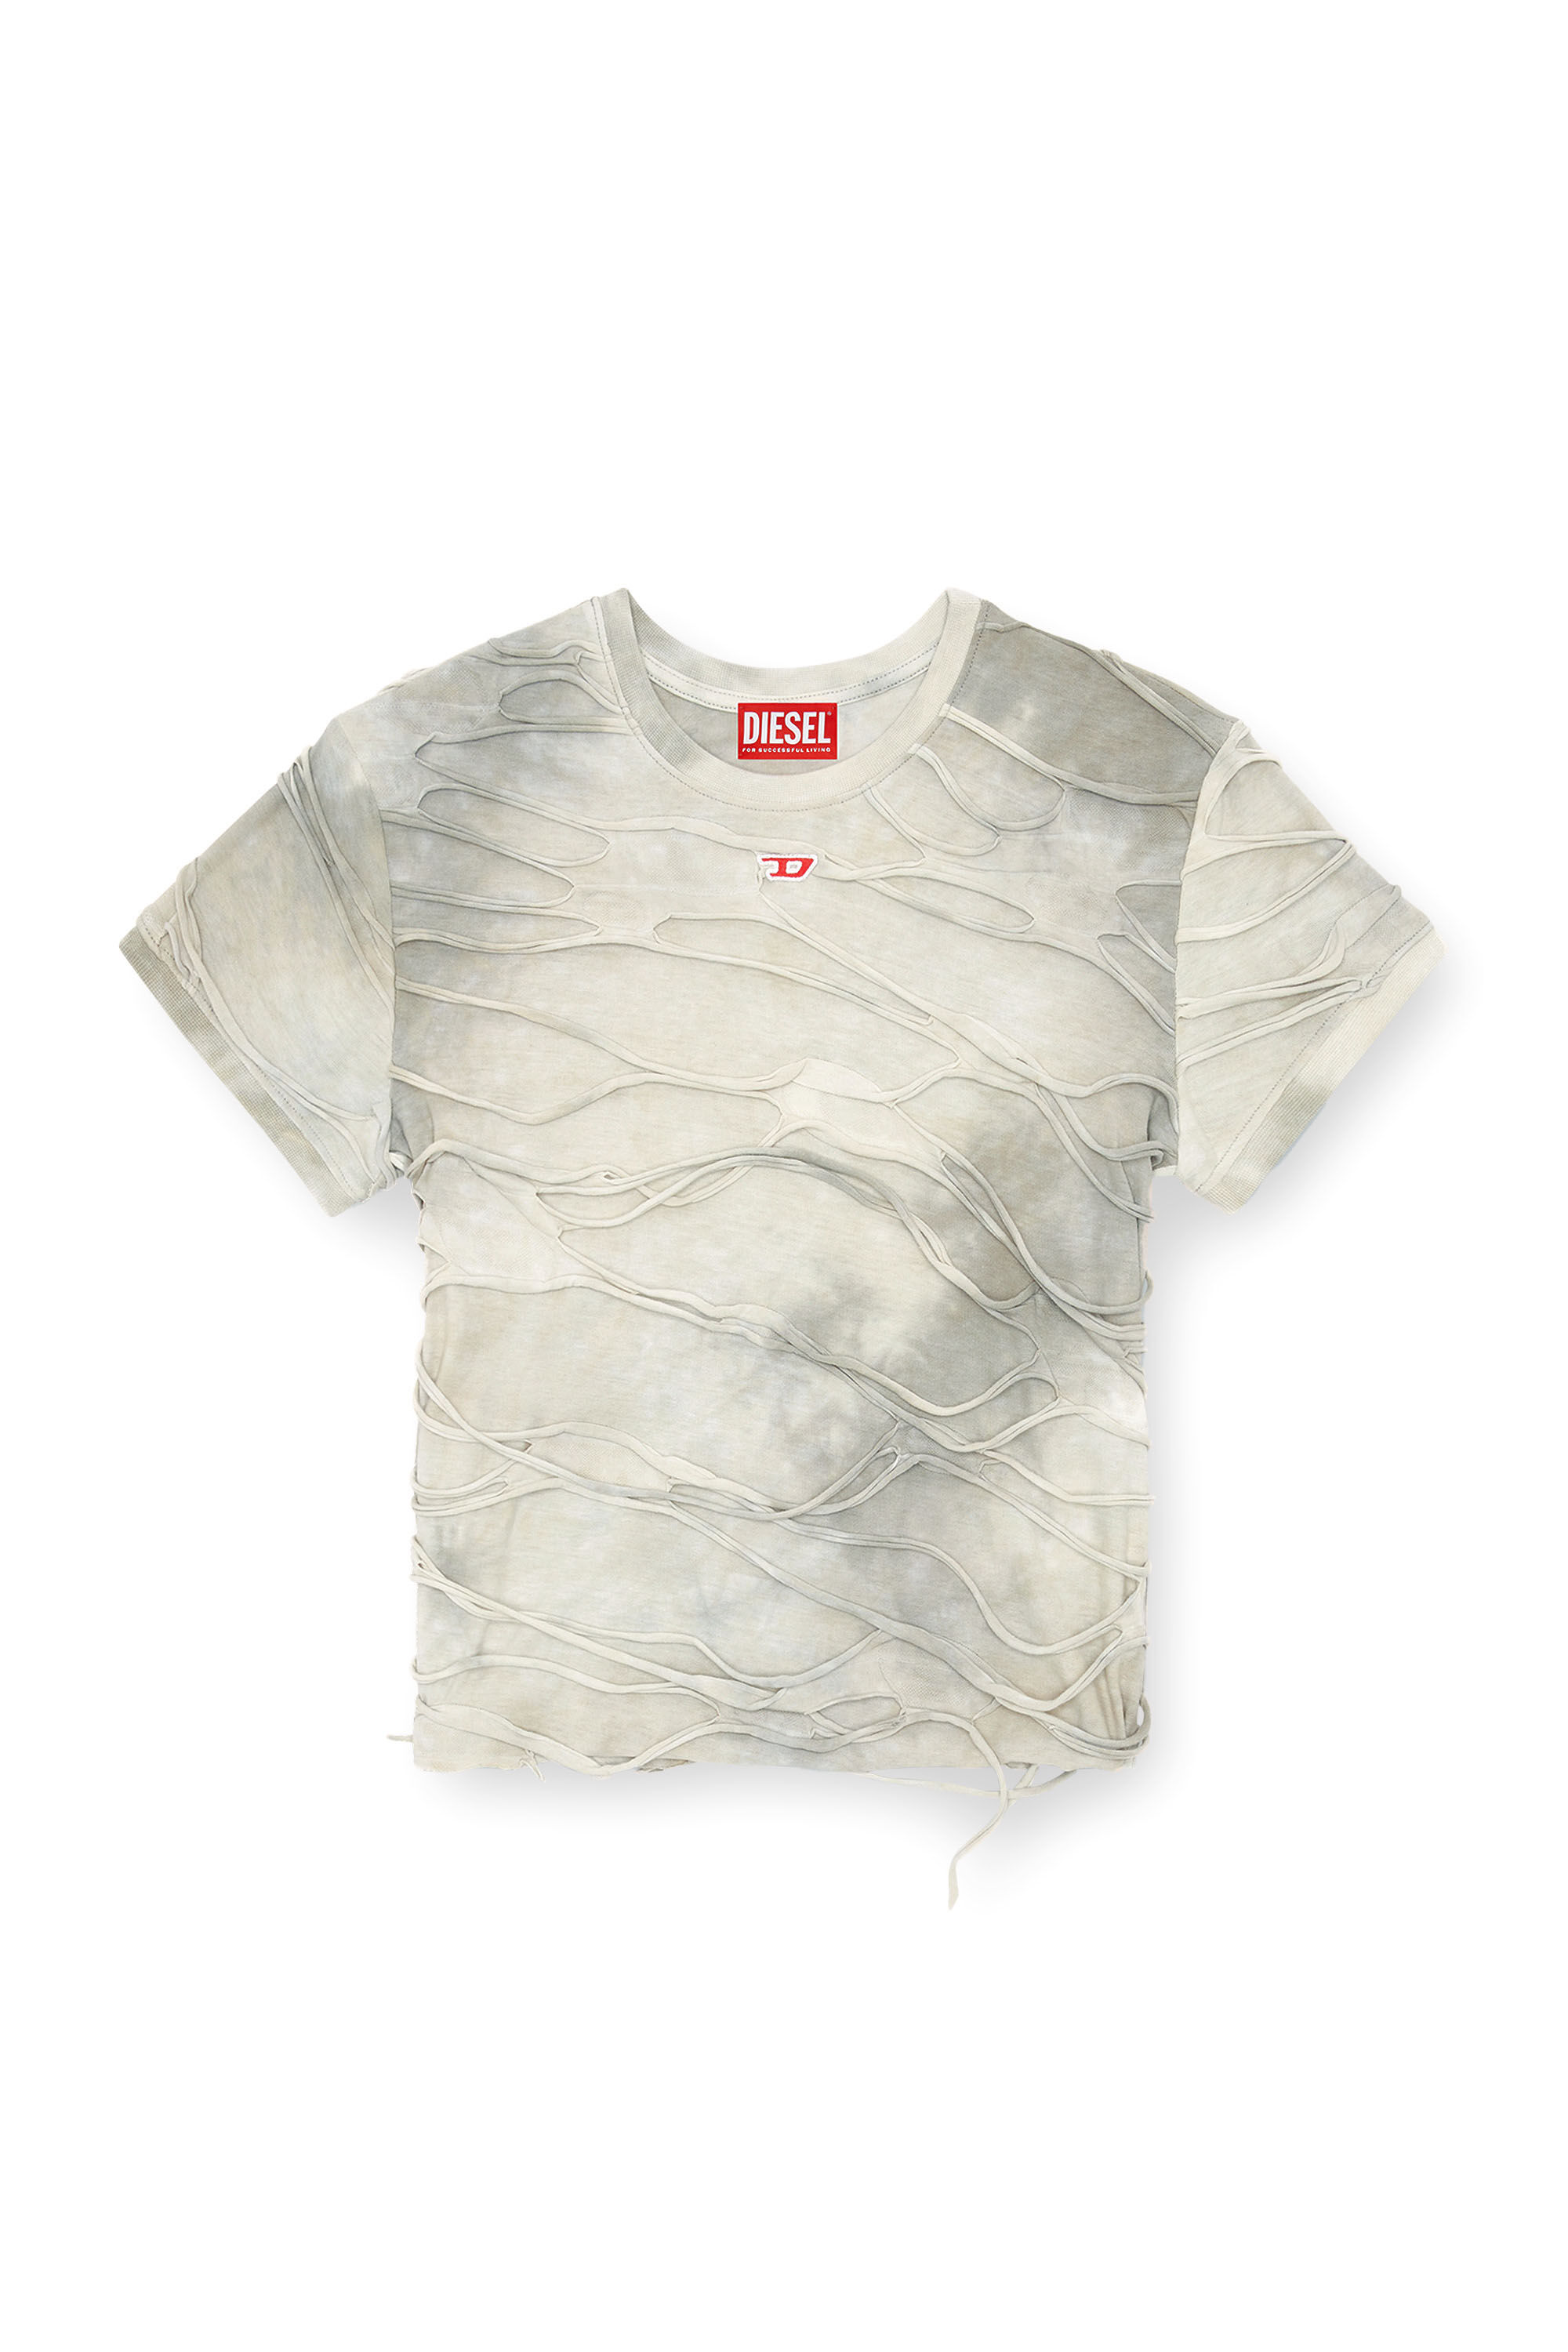 Diesel - T-UNCUTIE-LONG-P1, Femme T-shirt avec fils flottants in Gris - Image 2